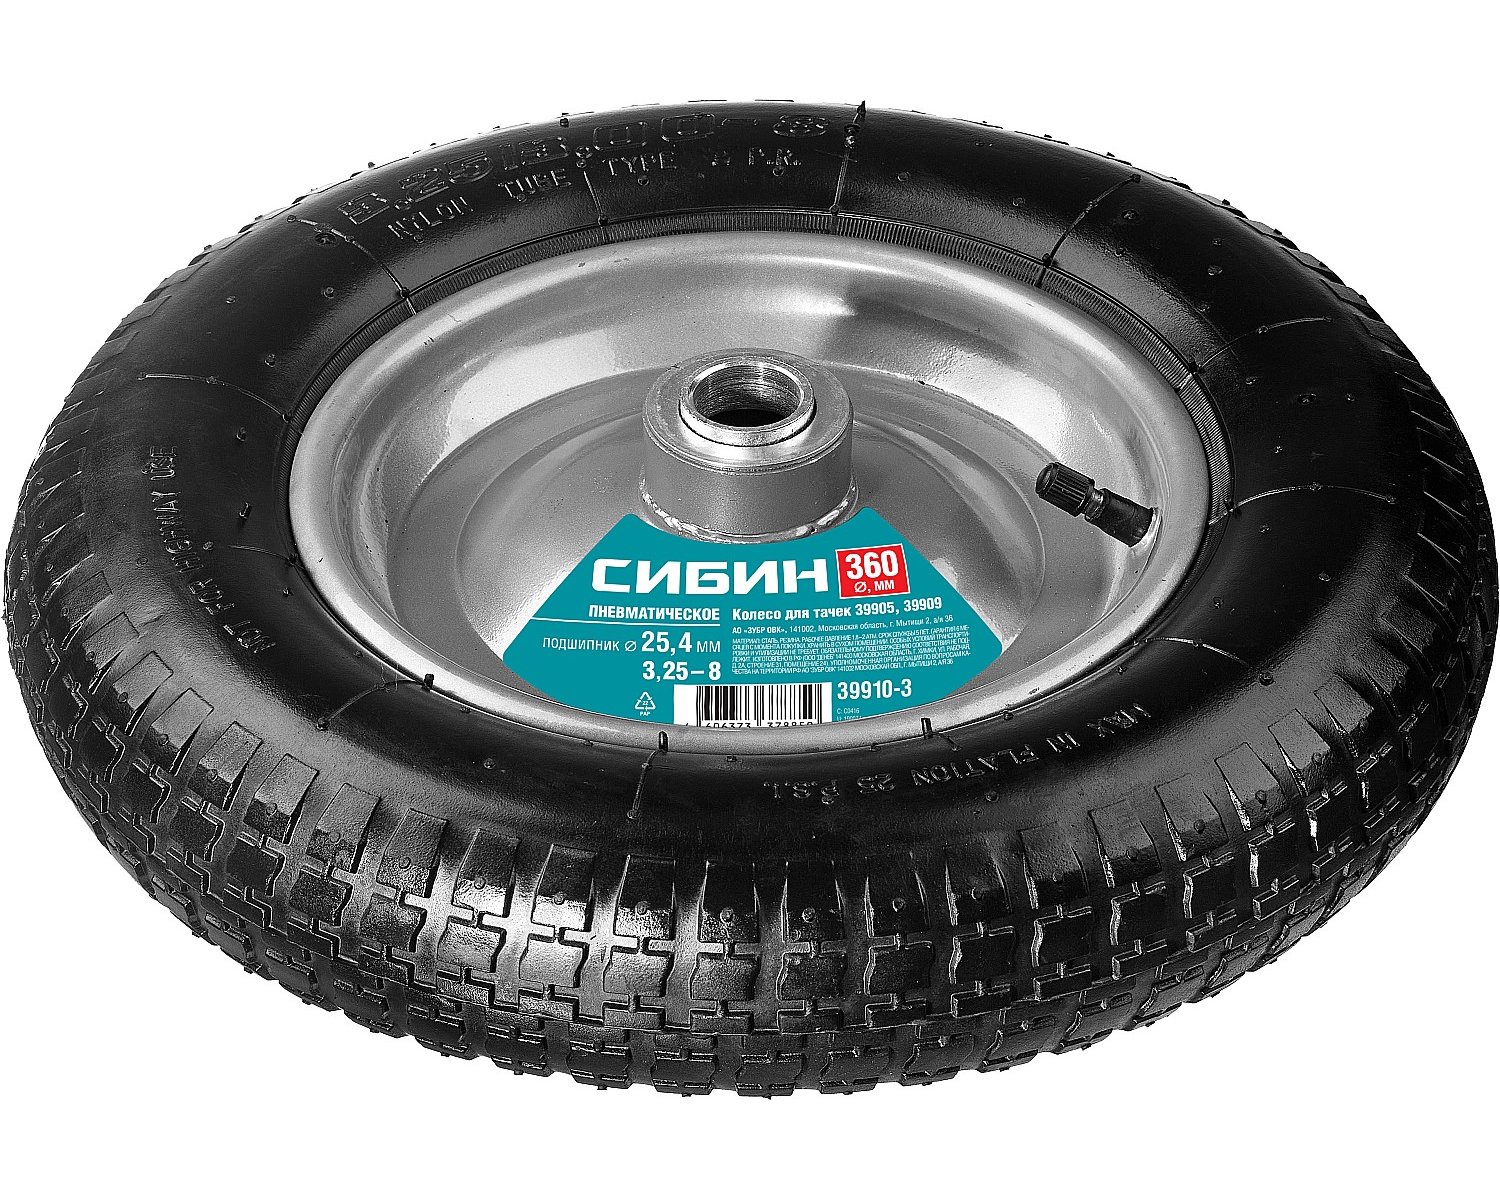 Пневматическое колесо СИБИН 360 мм для тачек (арт. 39905 39909) (39910-3)